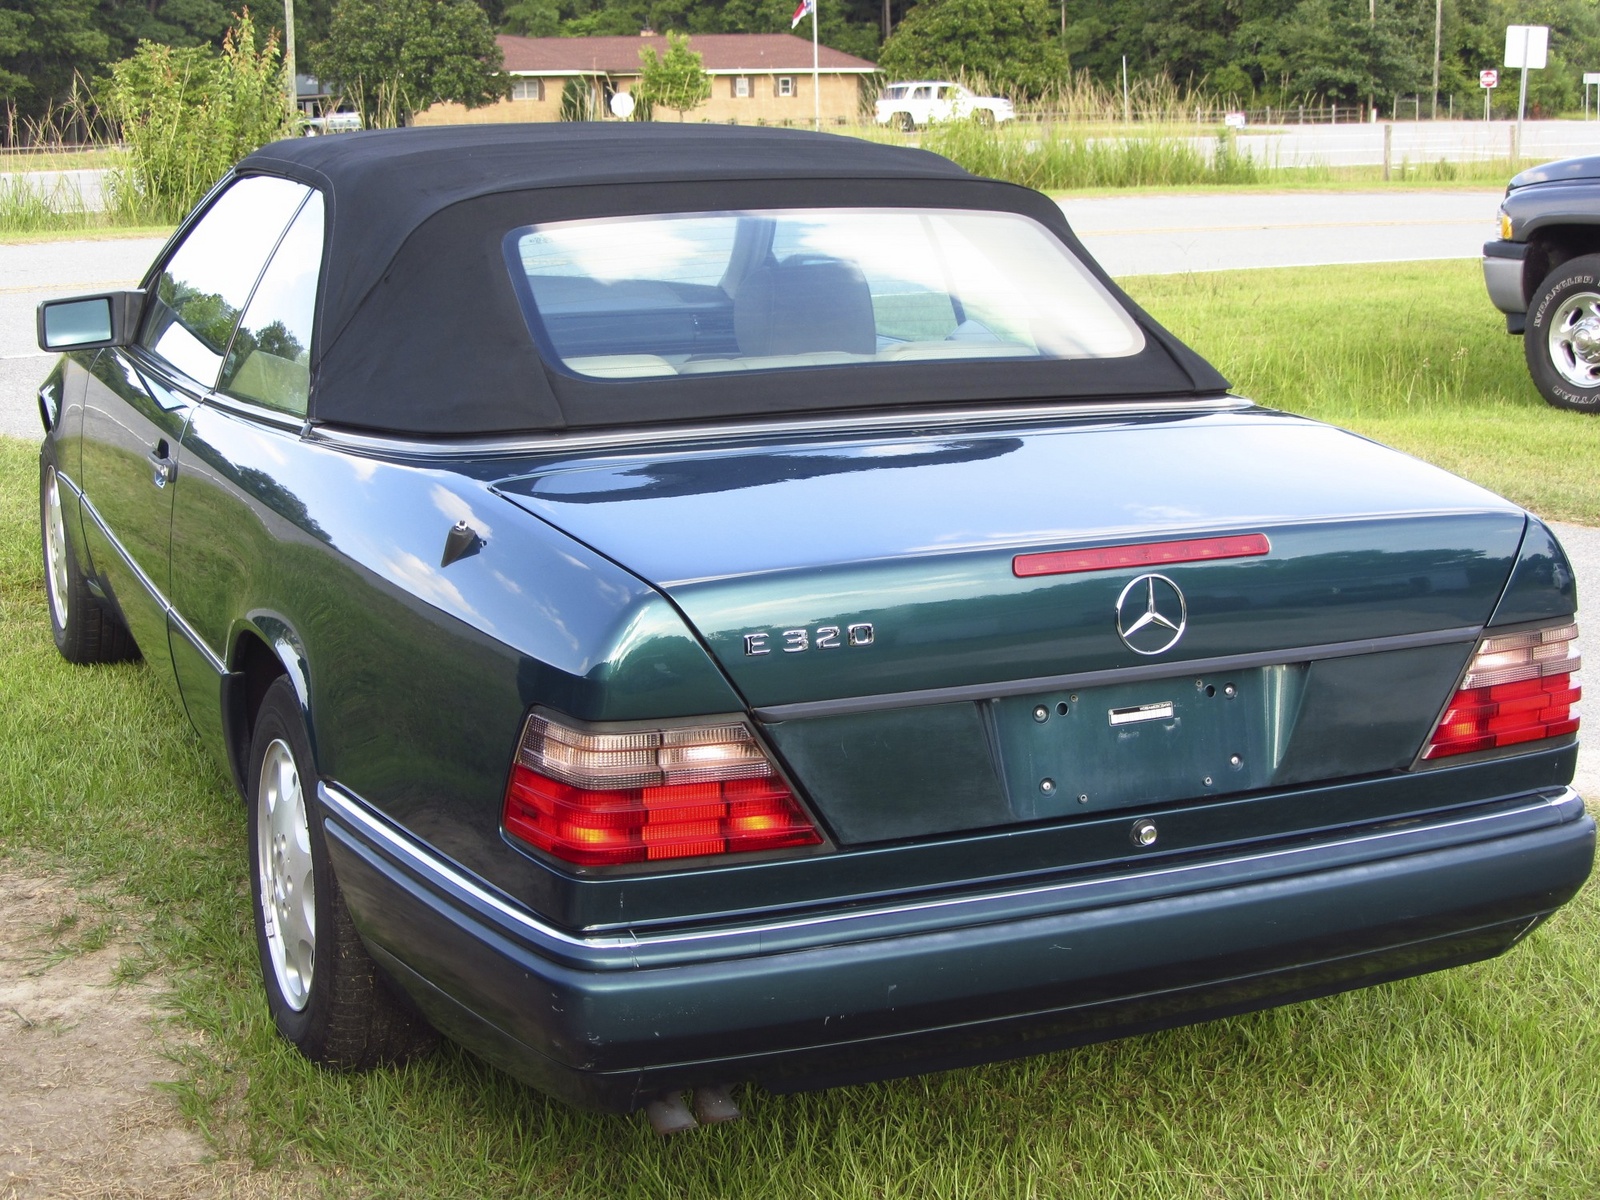 1995 Mercedes benz e320 cabriolet review #5